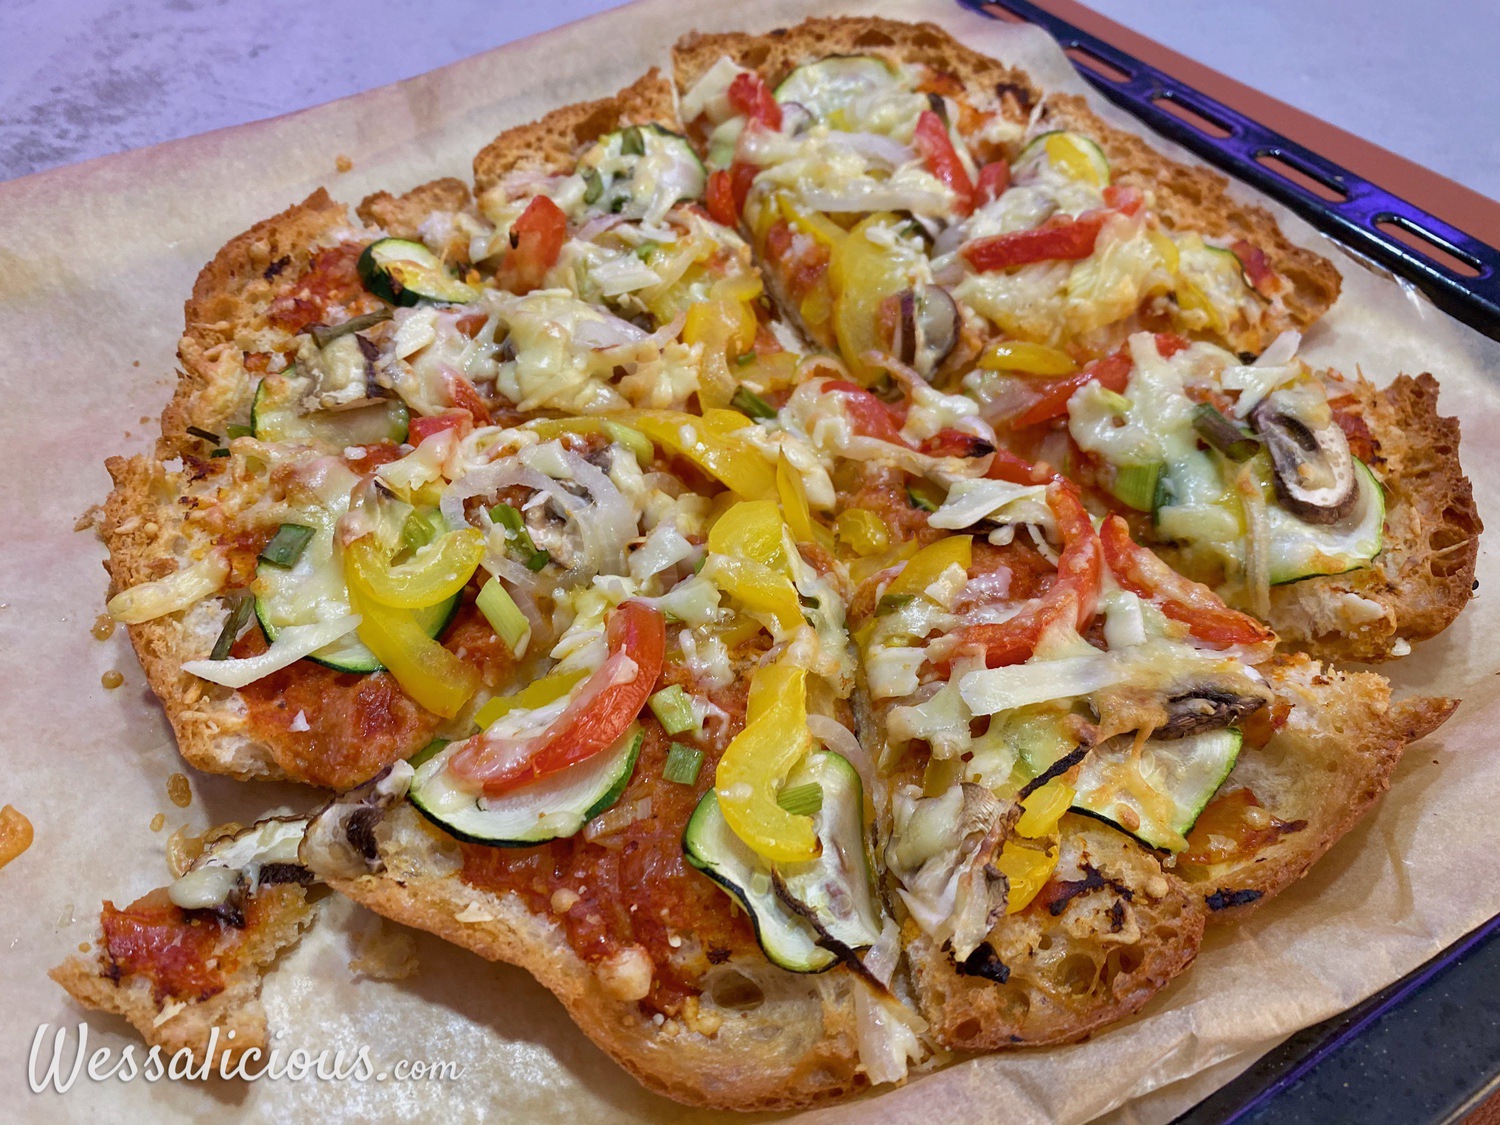 zonnebloem gekruld maart Pizza van turks brood met mozzarella salade - Wessalicious